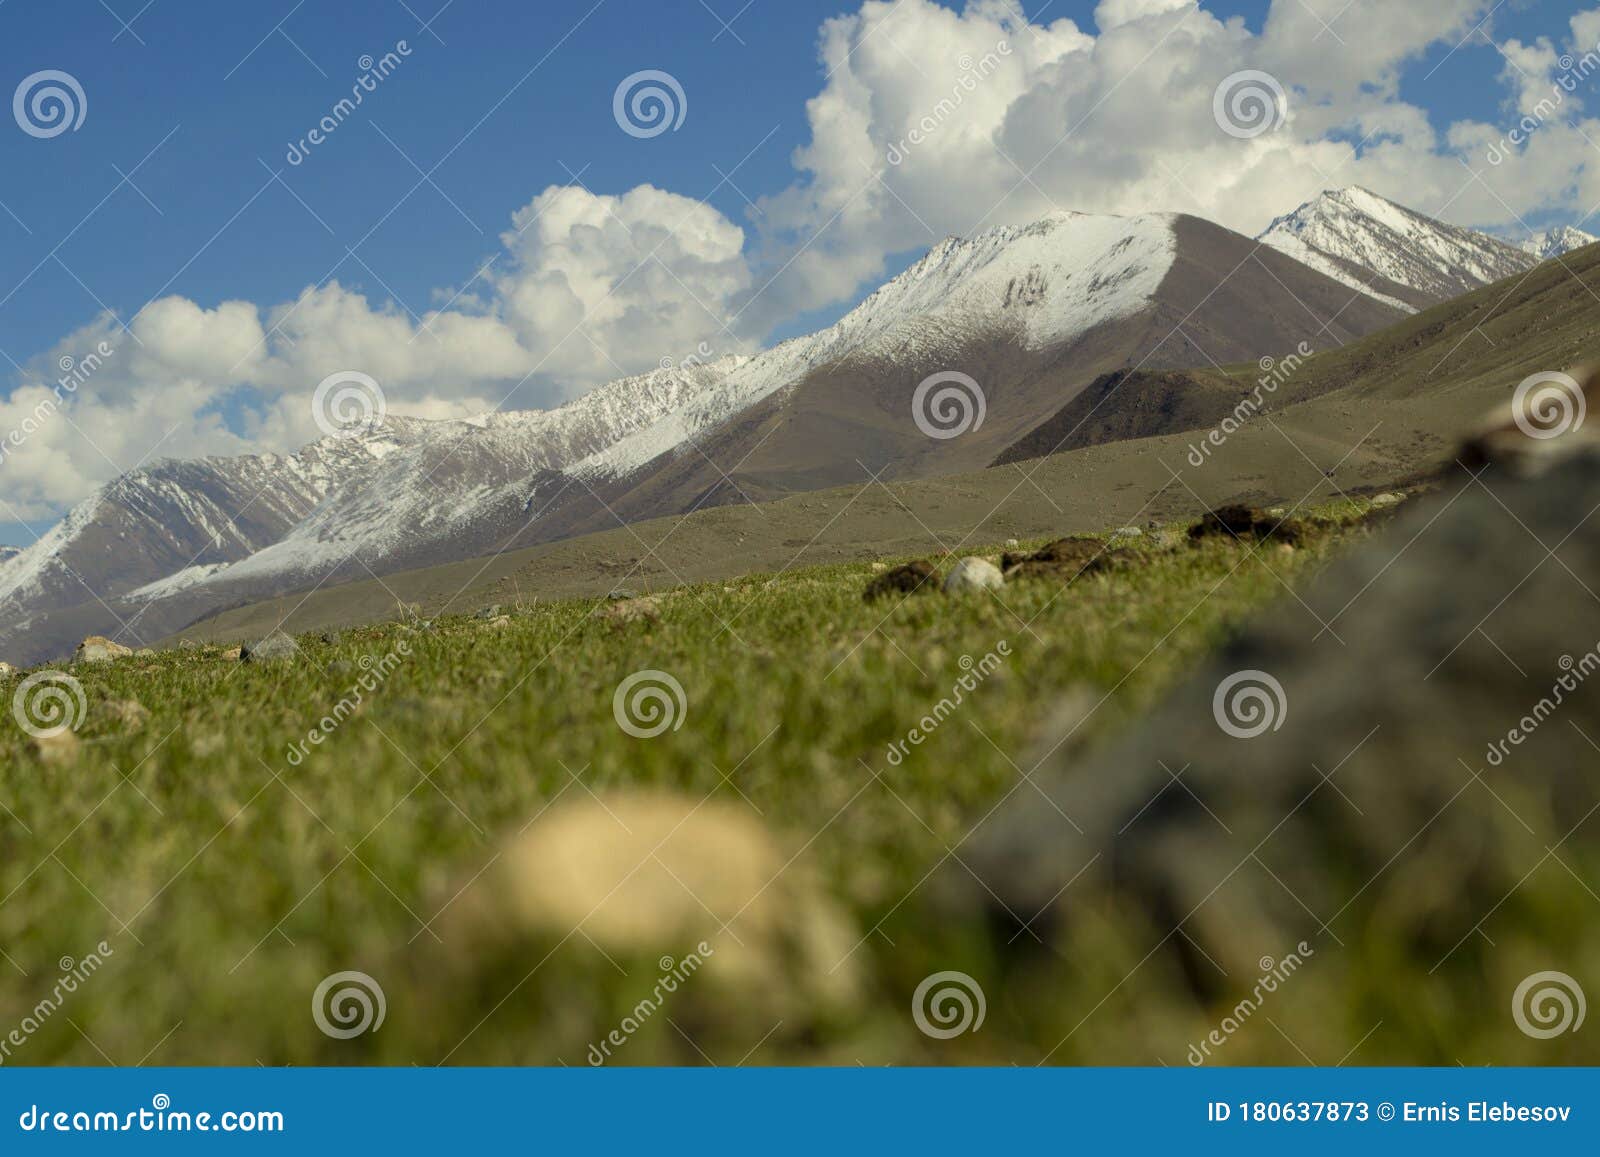 Mountains Issyk Kul Lake Stock Image - Image of beautiful: 180637873